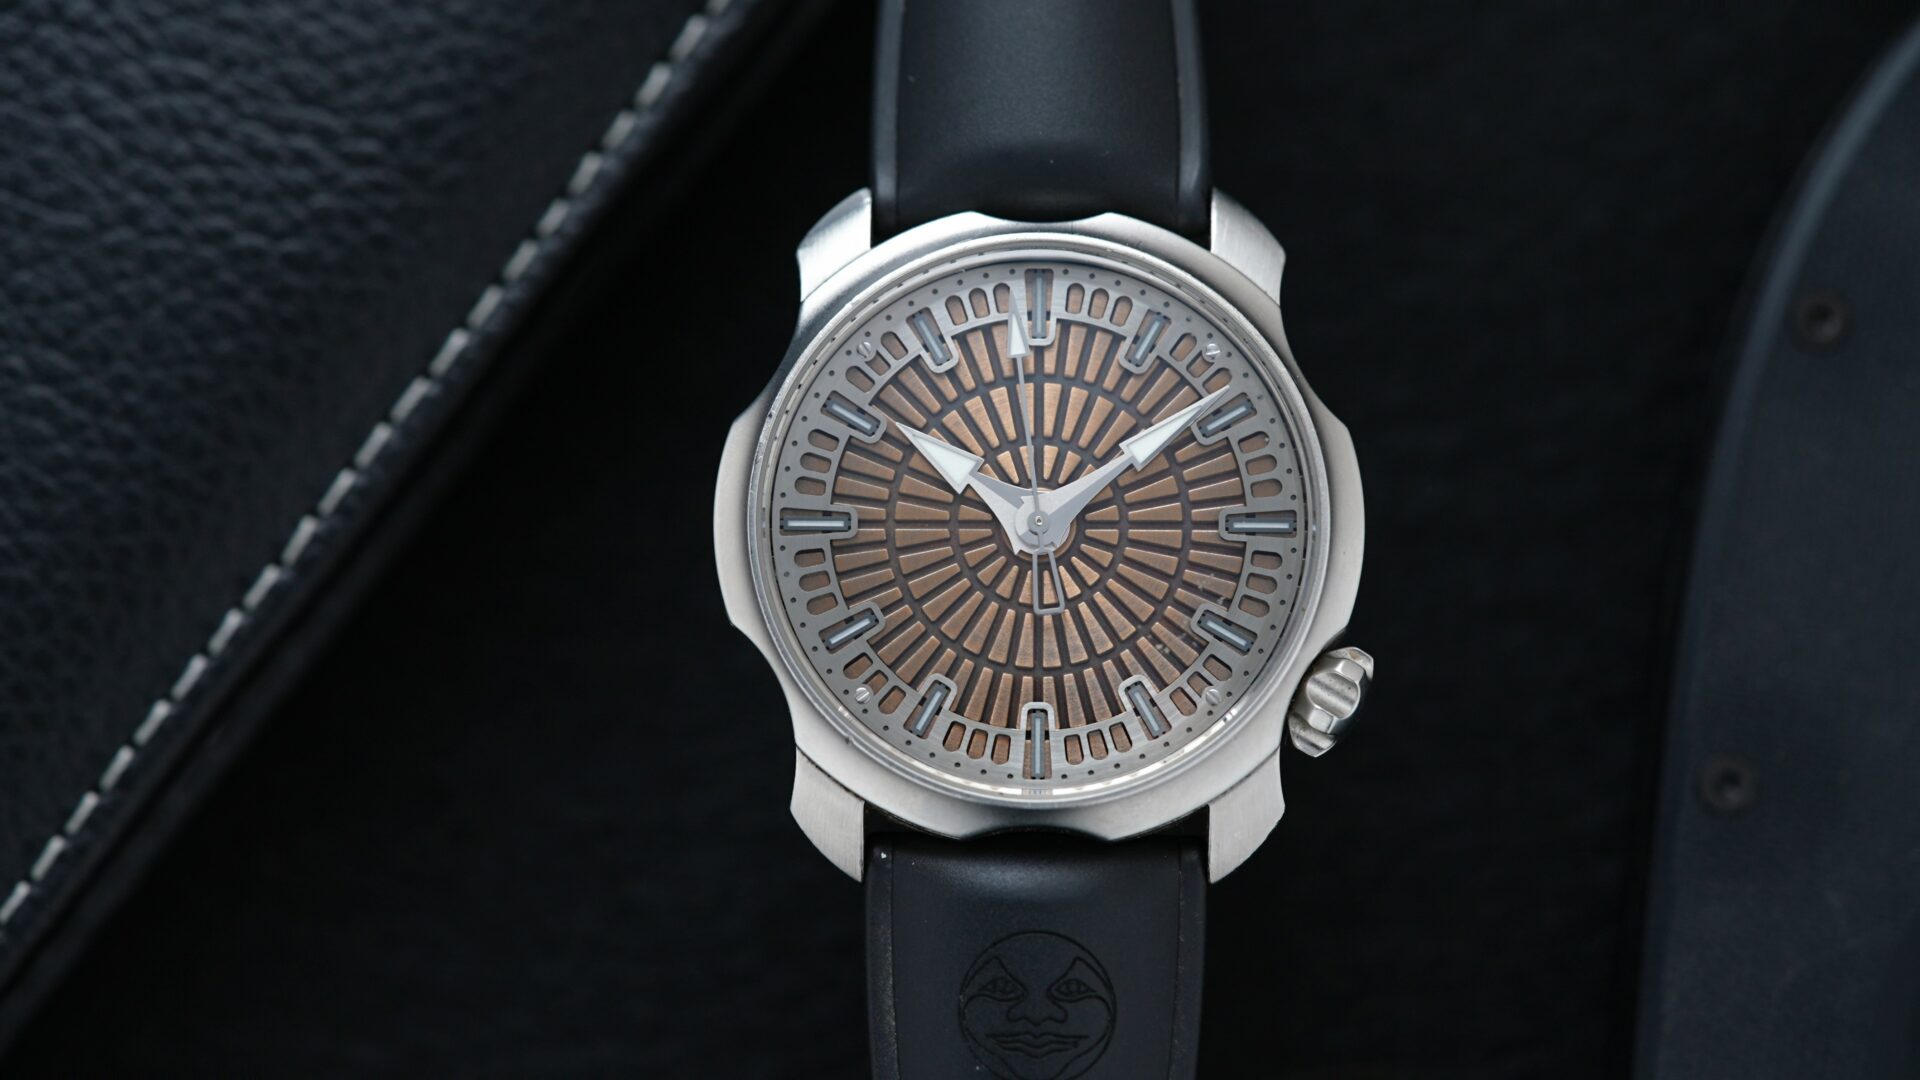 Sarpaneva Super1 watch featured under white light with binder in background.